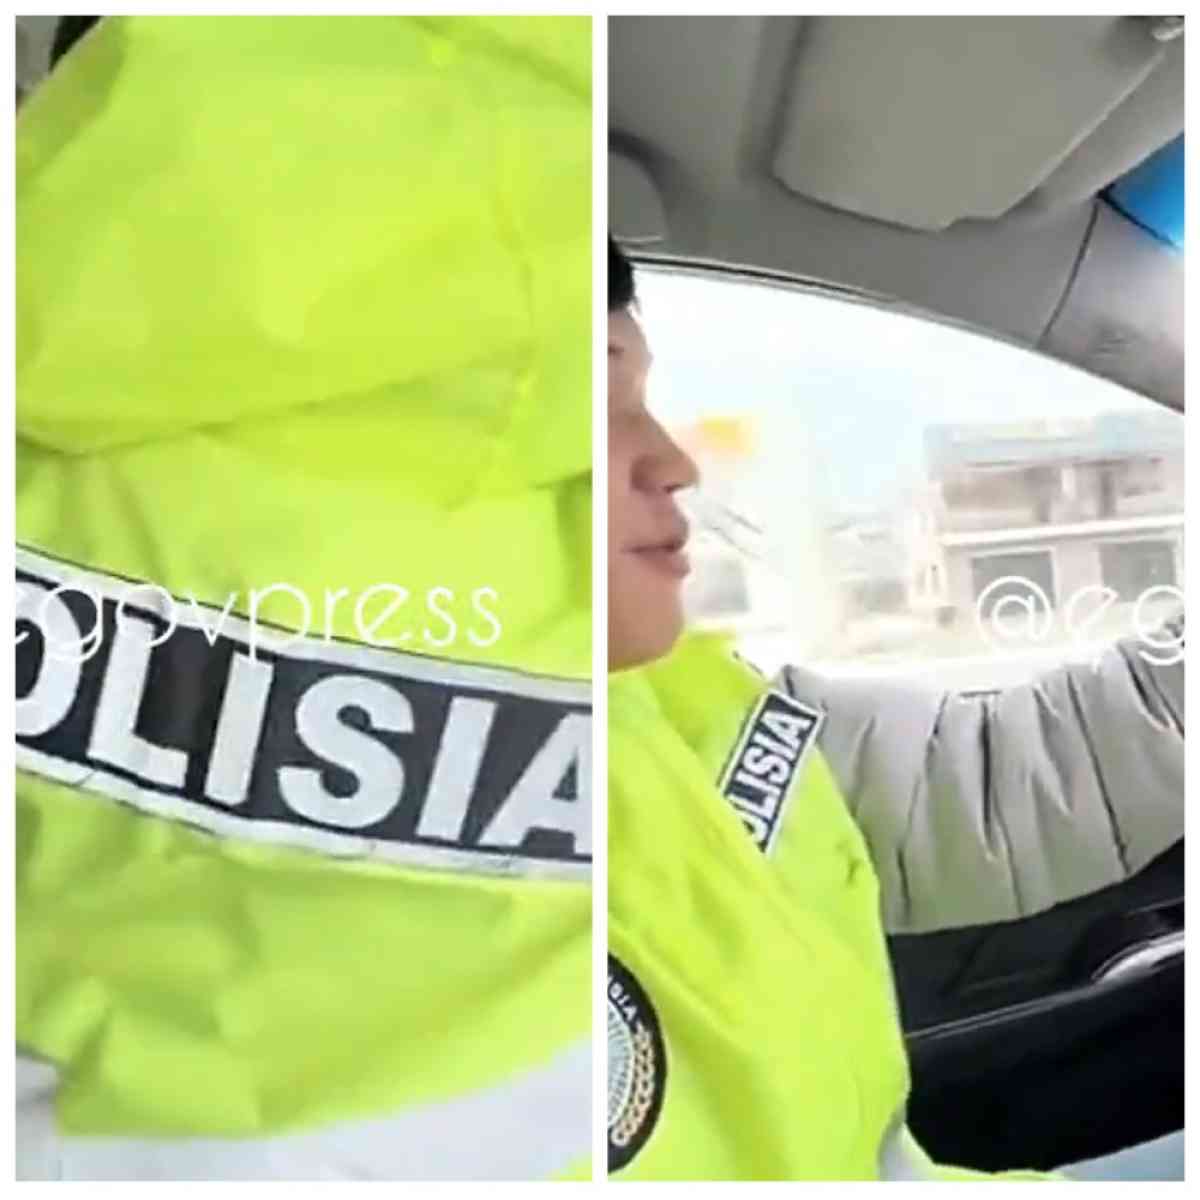 Парня за рулем в куртке с надписью «Polisia» оштрафовали в Таразе